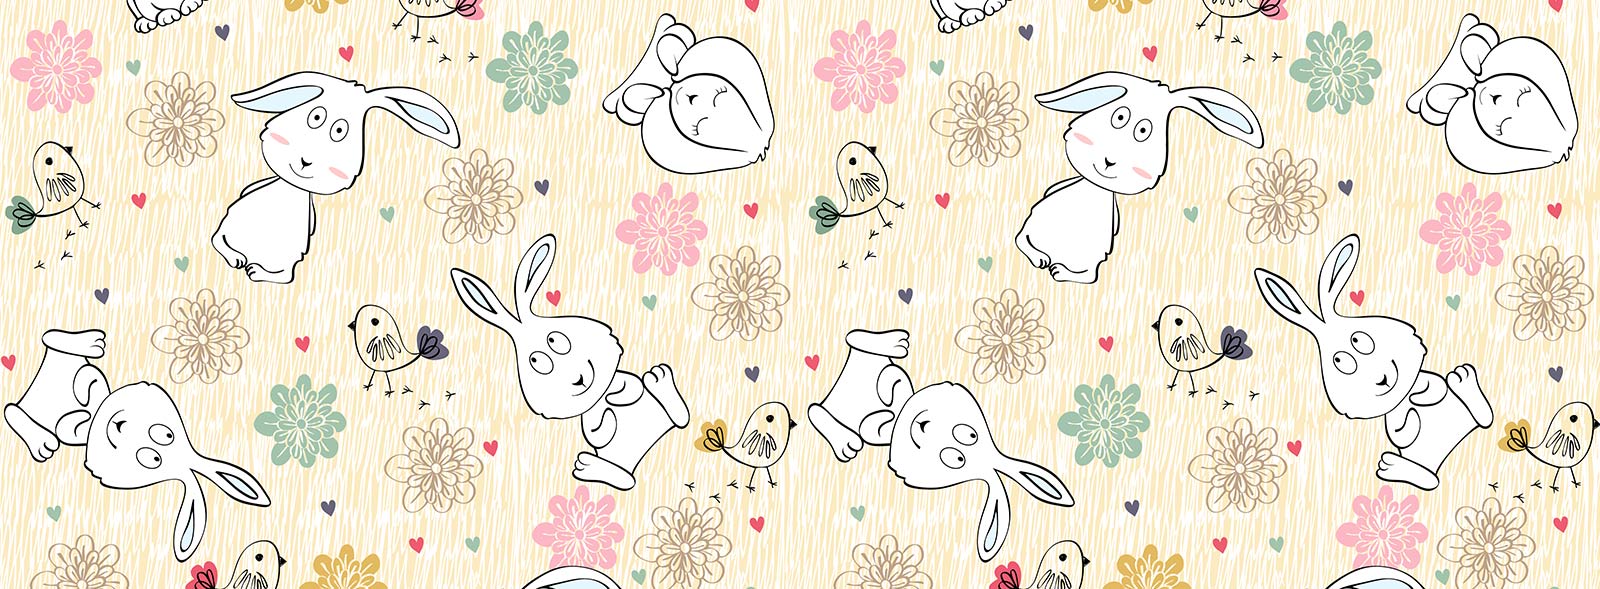 Cute Bunny Mural Wallpaper | Animal Wallpaper | Ever Wallpaper UK